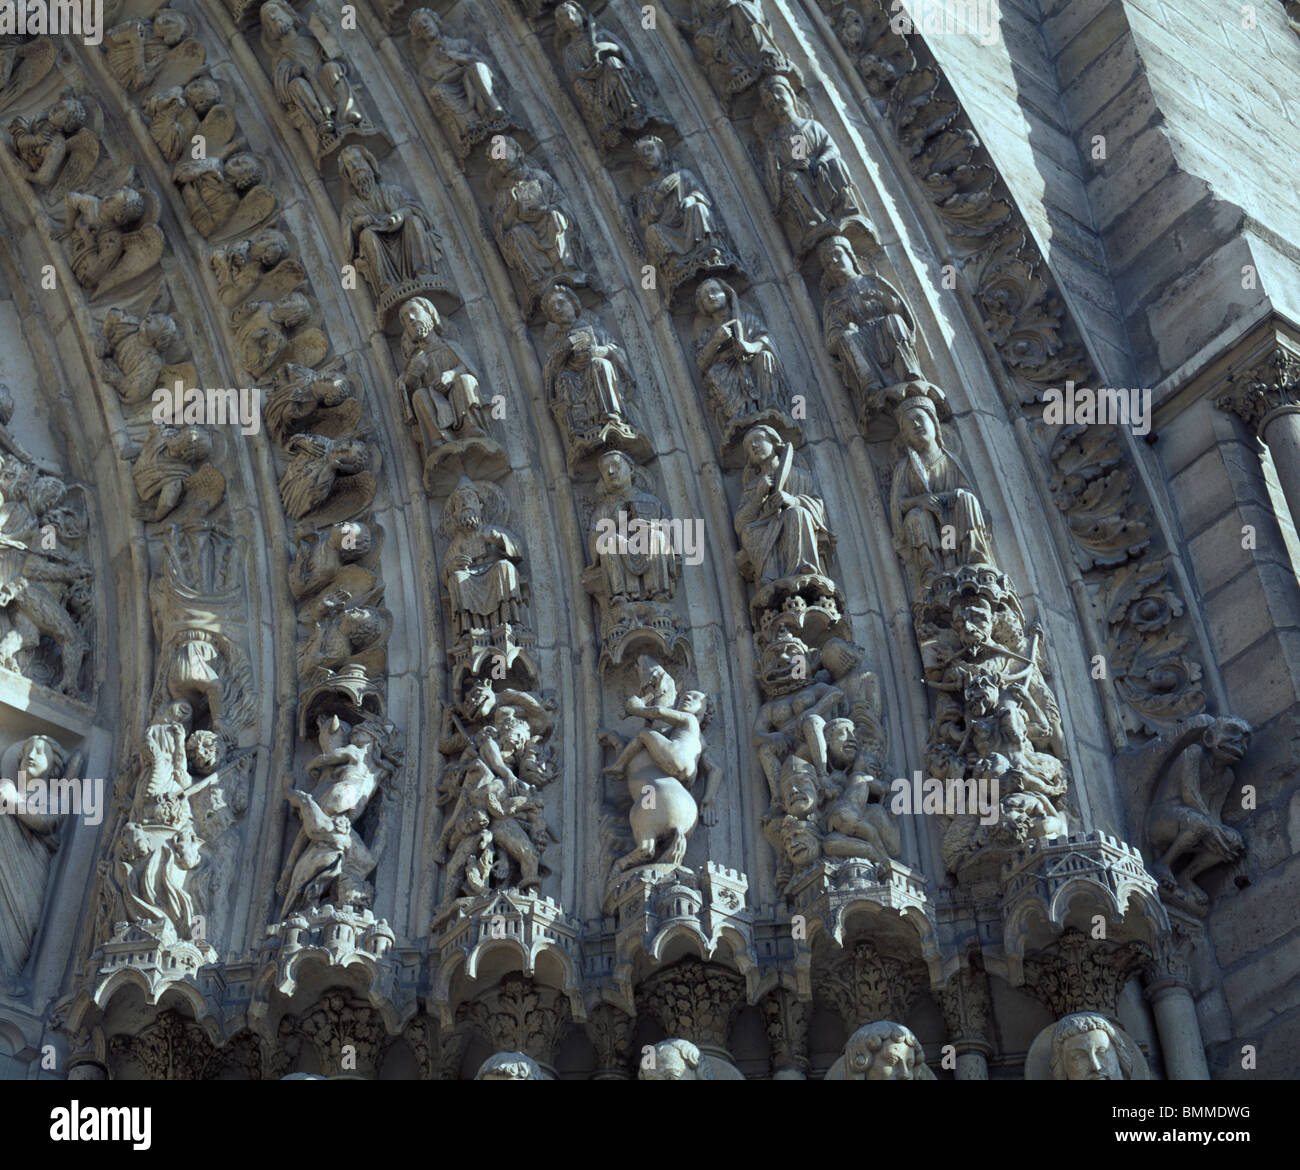 Notre-Dame, Paris, Frankreich. Skulptur der Heiligen Engel und Bestien auf zentrale Portal Westfassade der französischen gotischen Kathedrale. Stockfoto